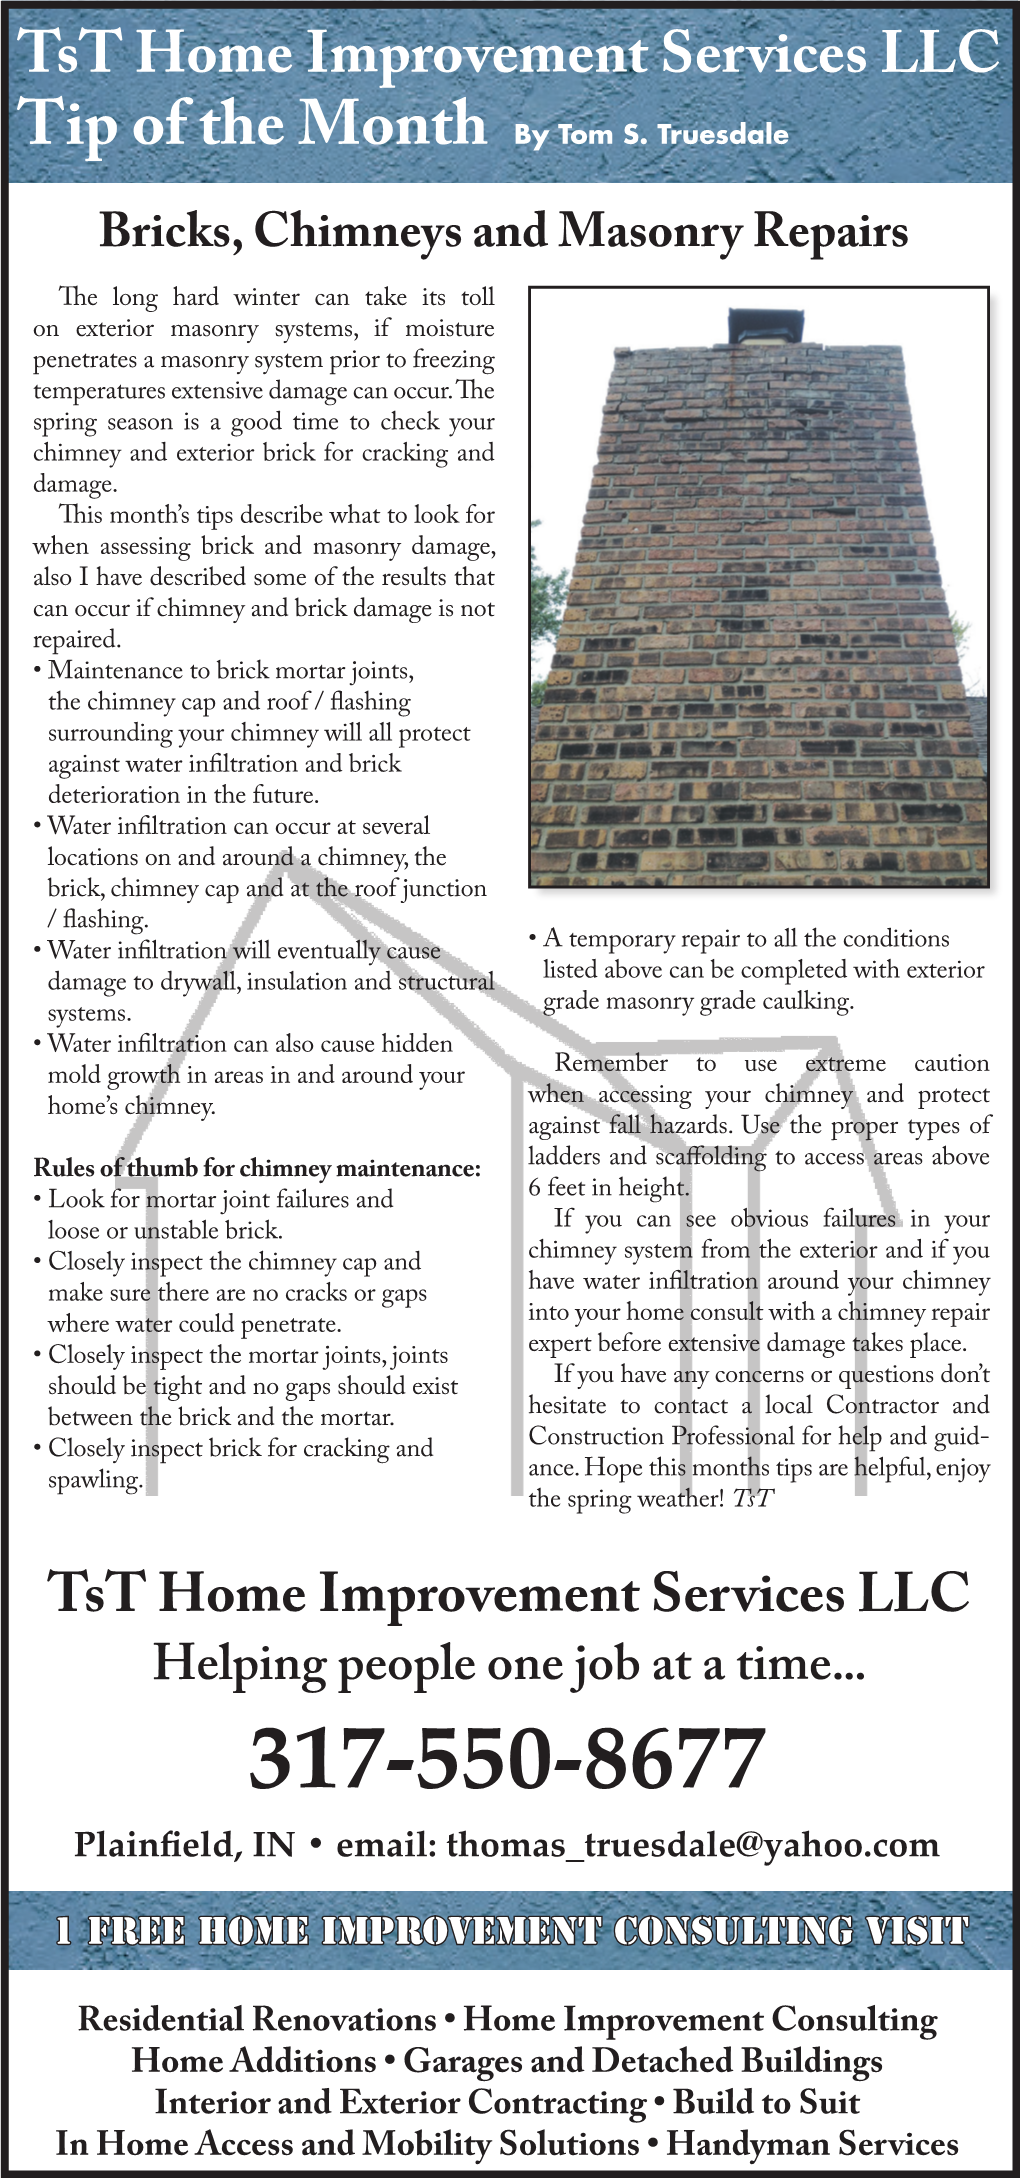 Bricks, Chimneys and Masonry Repairs